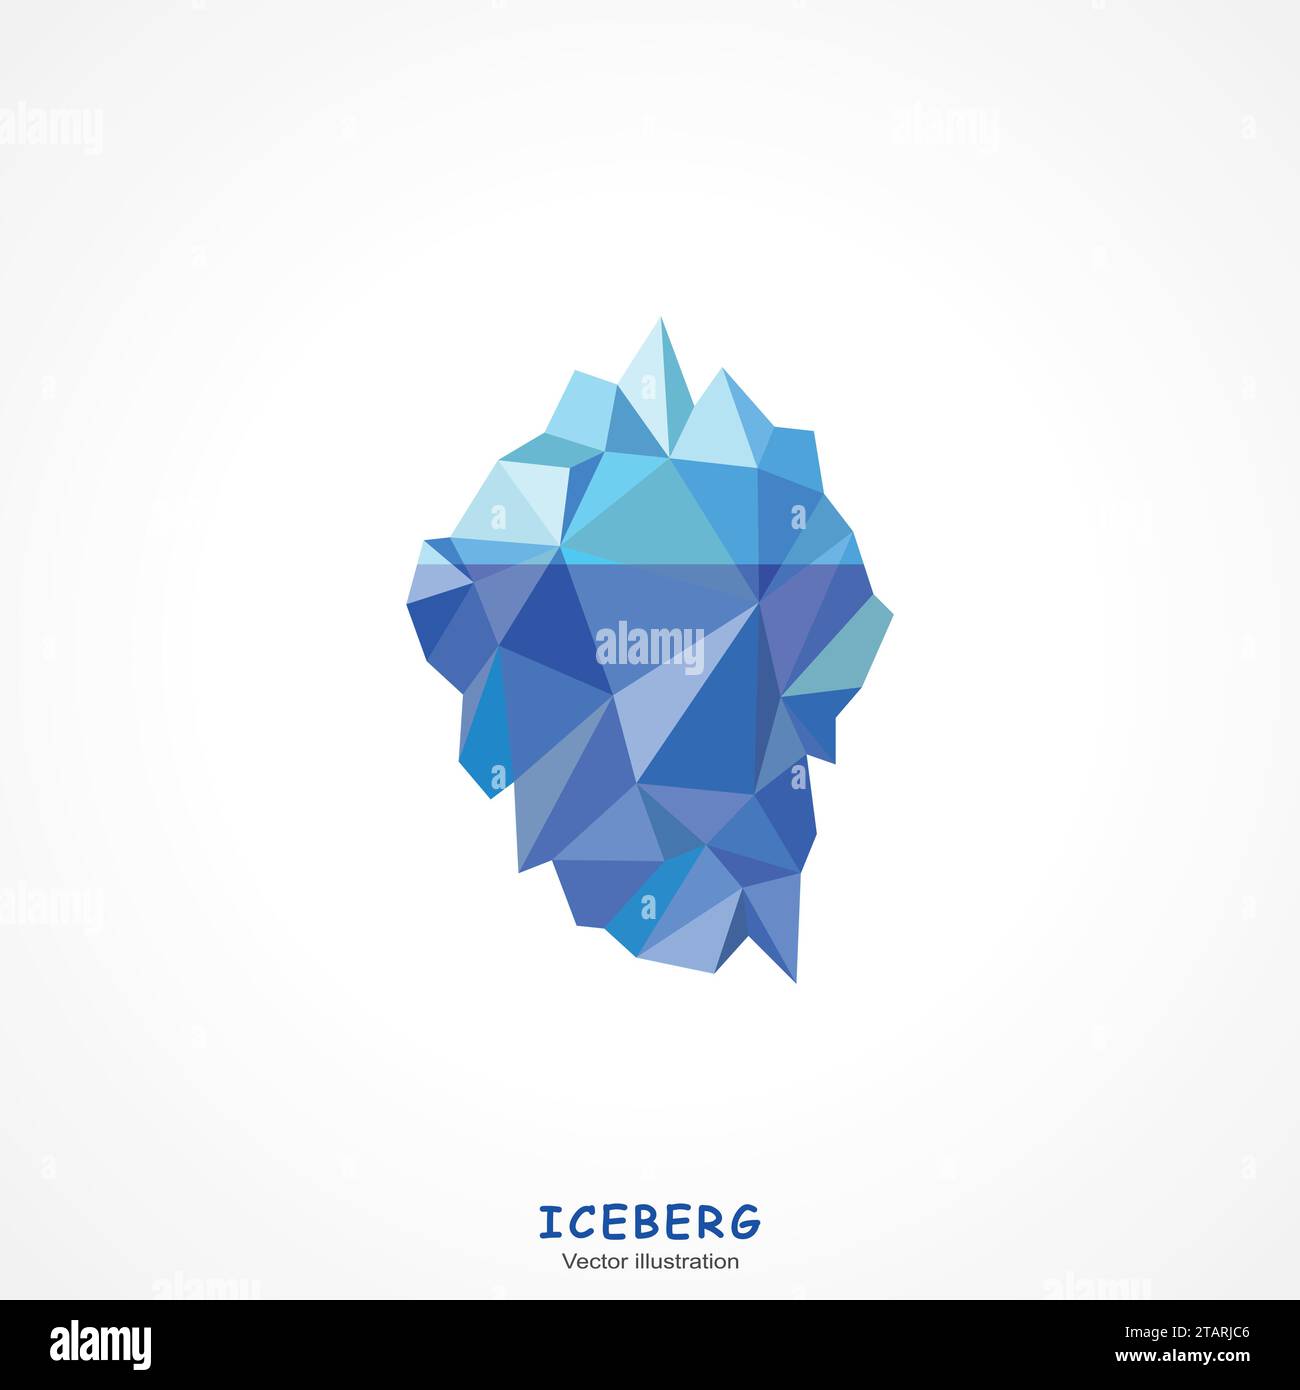 Un Iceberg bleu sur fond blanc. Illustration vectorielle Illustration de Vecteur